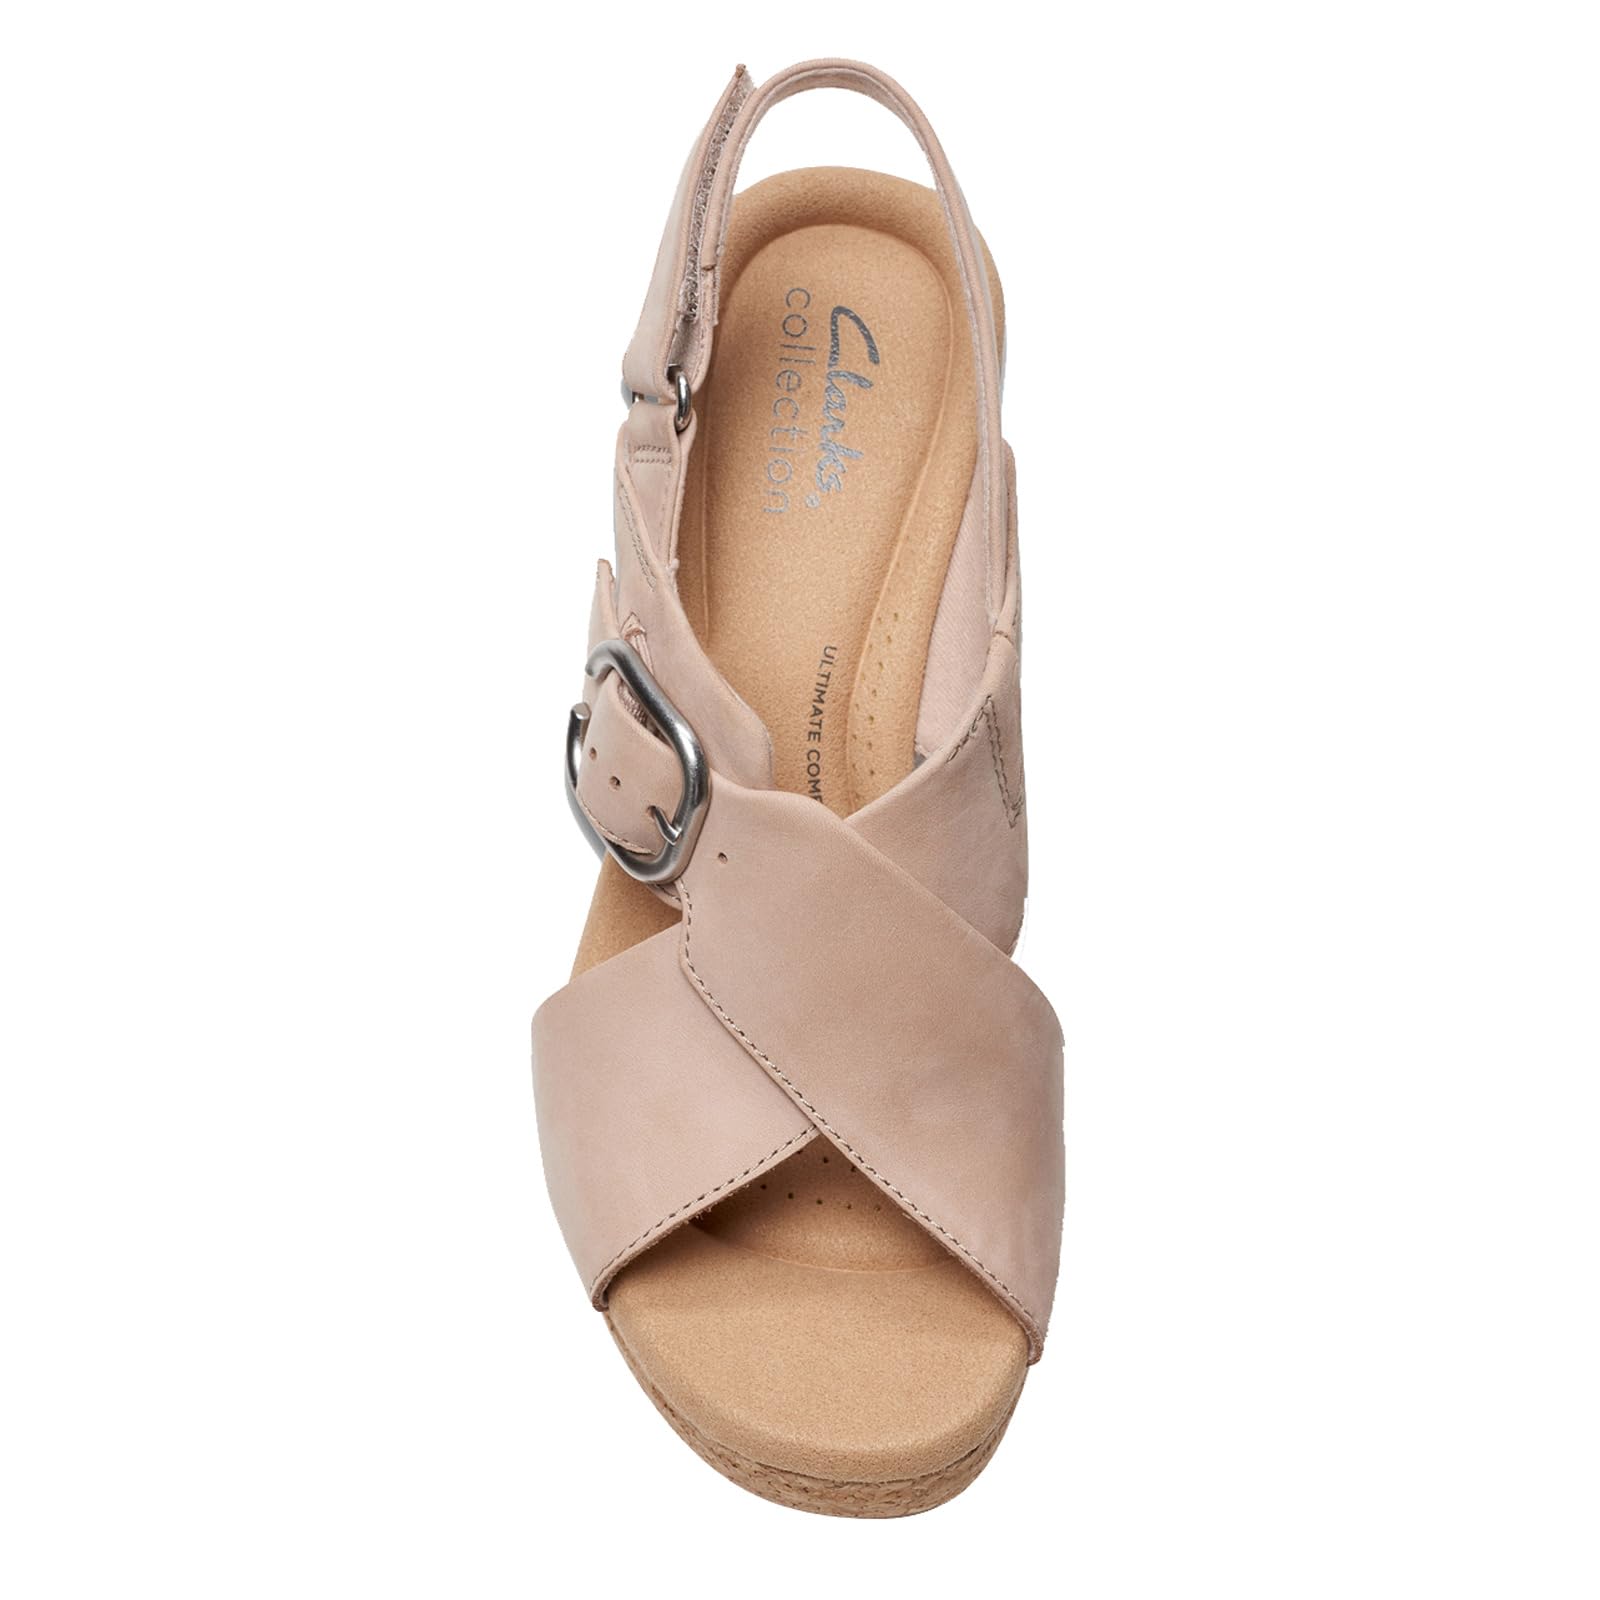 Clarks Women's Giselle Dove Wedge Sandal